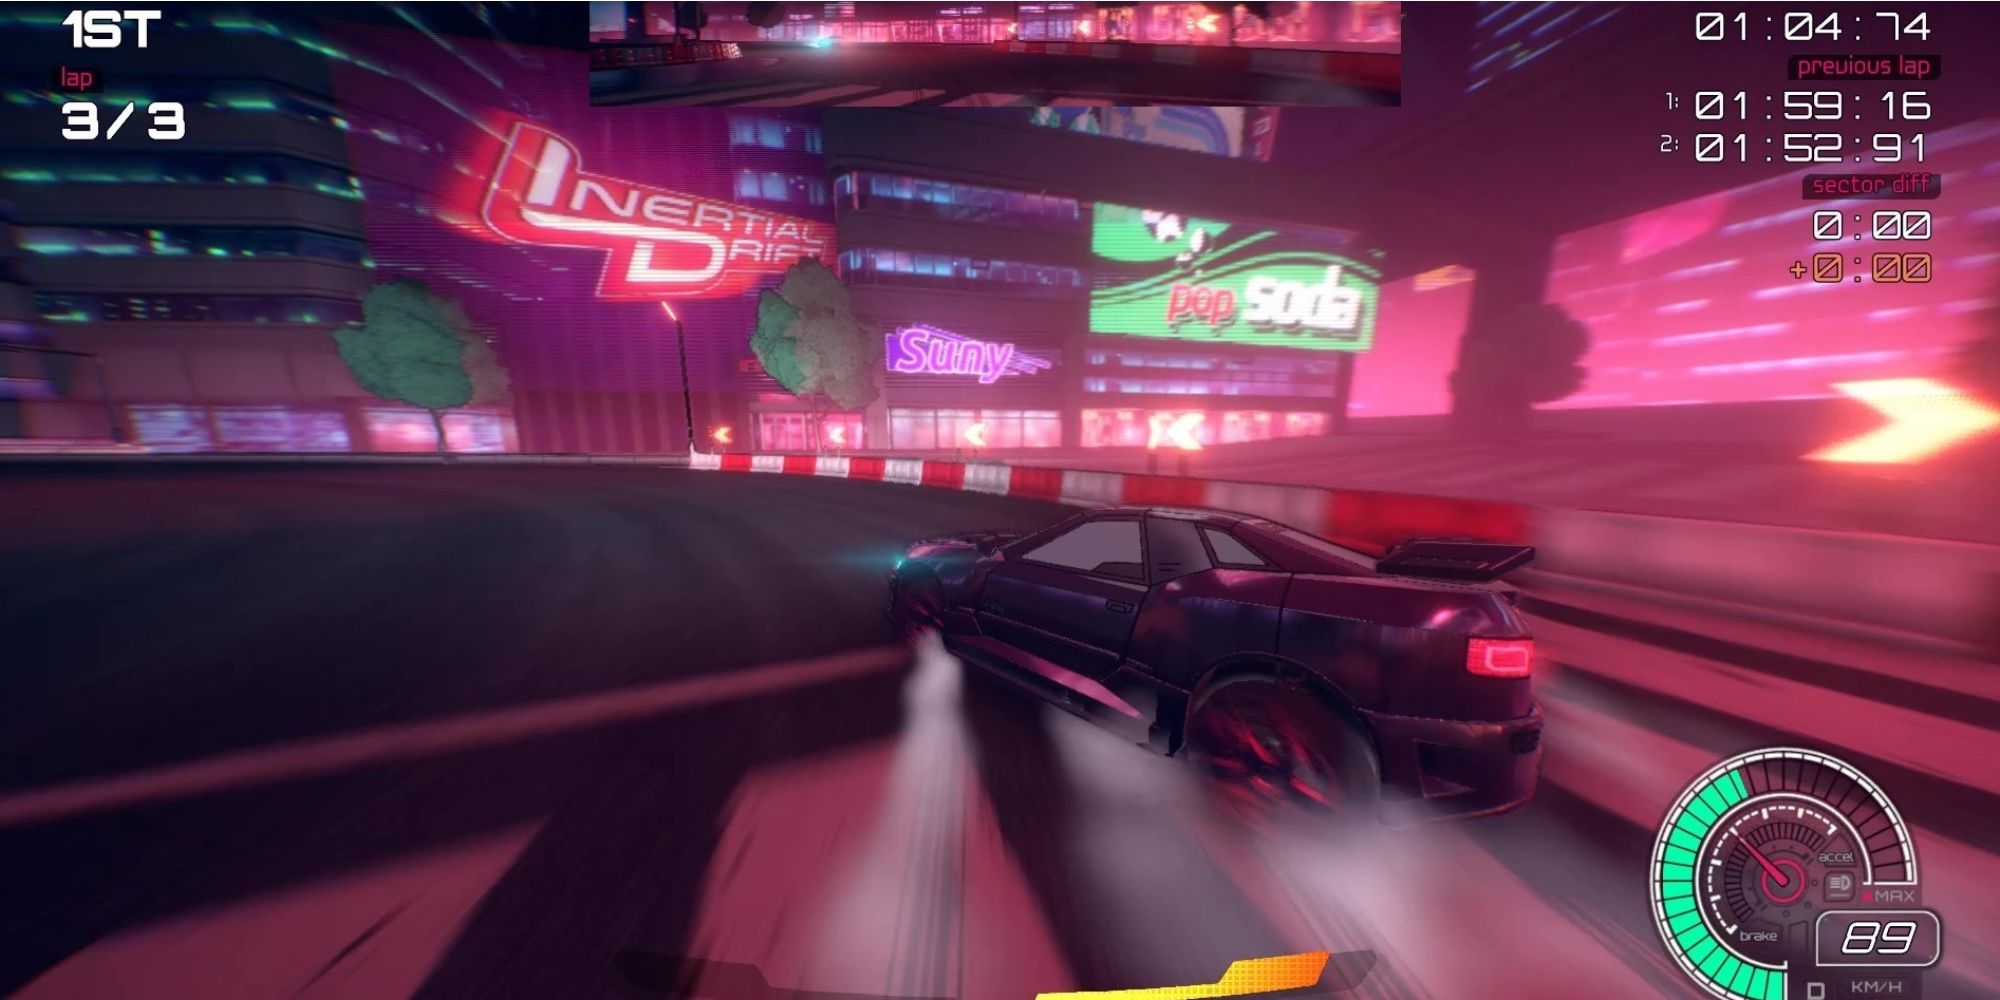 I giochi di corse più realistici - Inertial Drift - Il giocatore sfreccia per le strade con stile